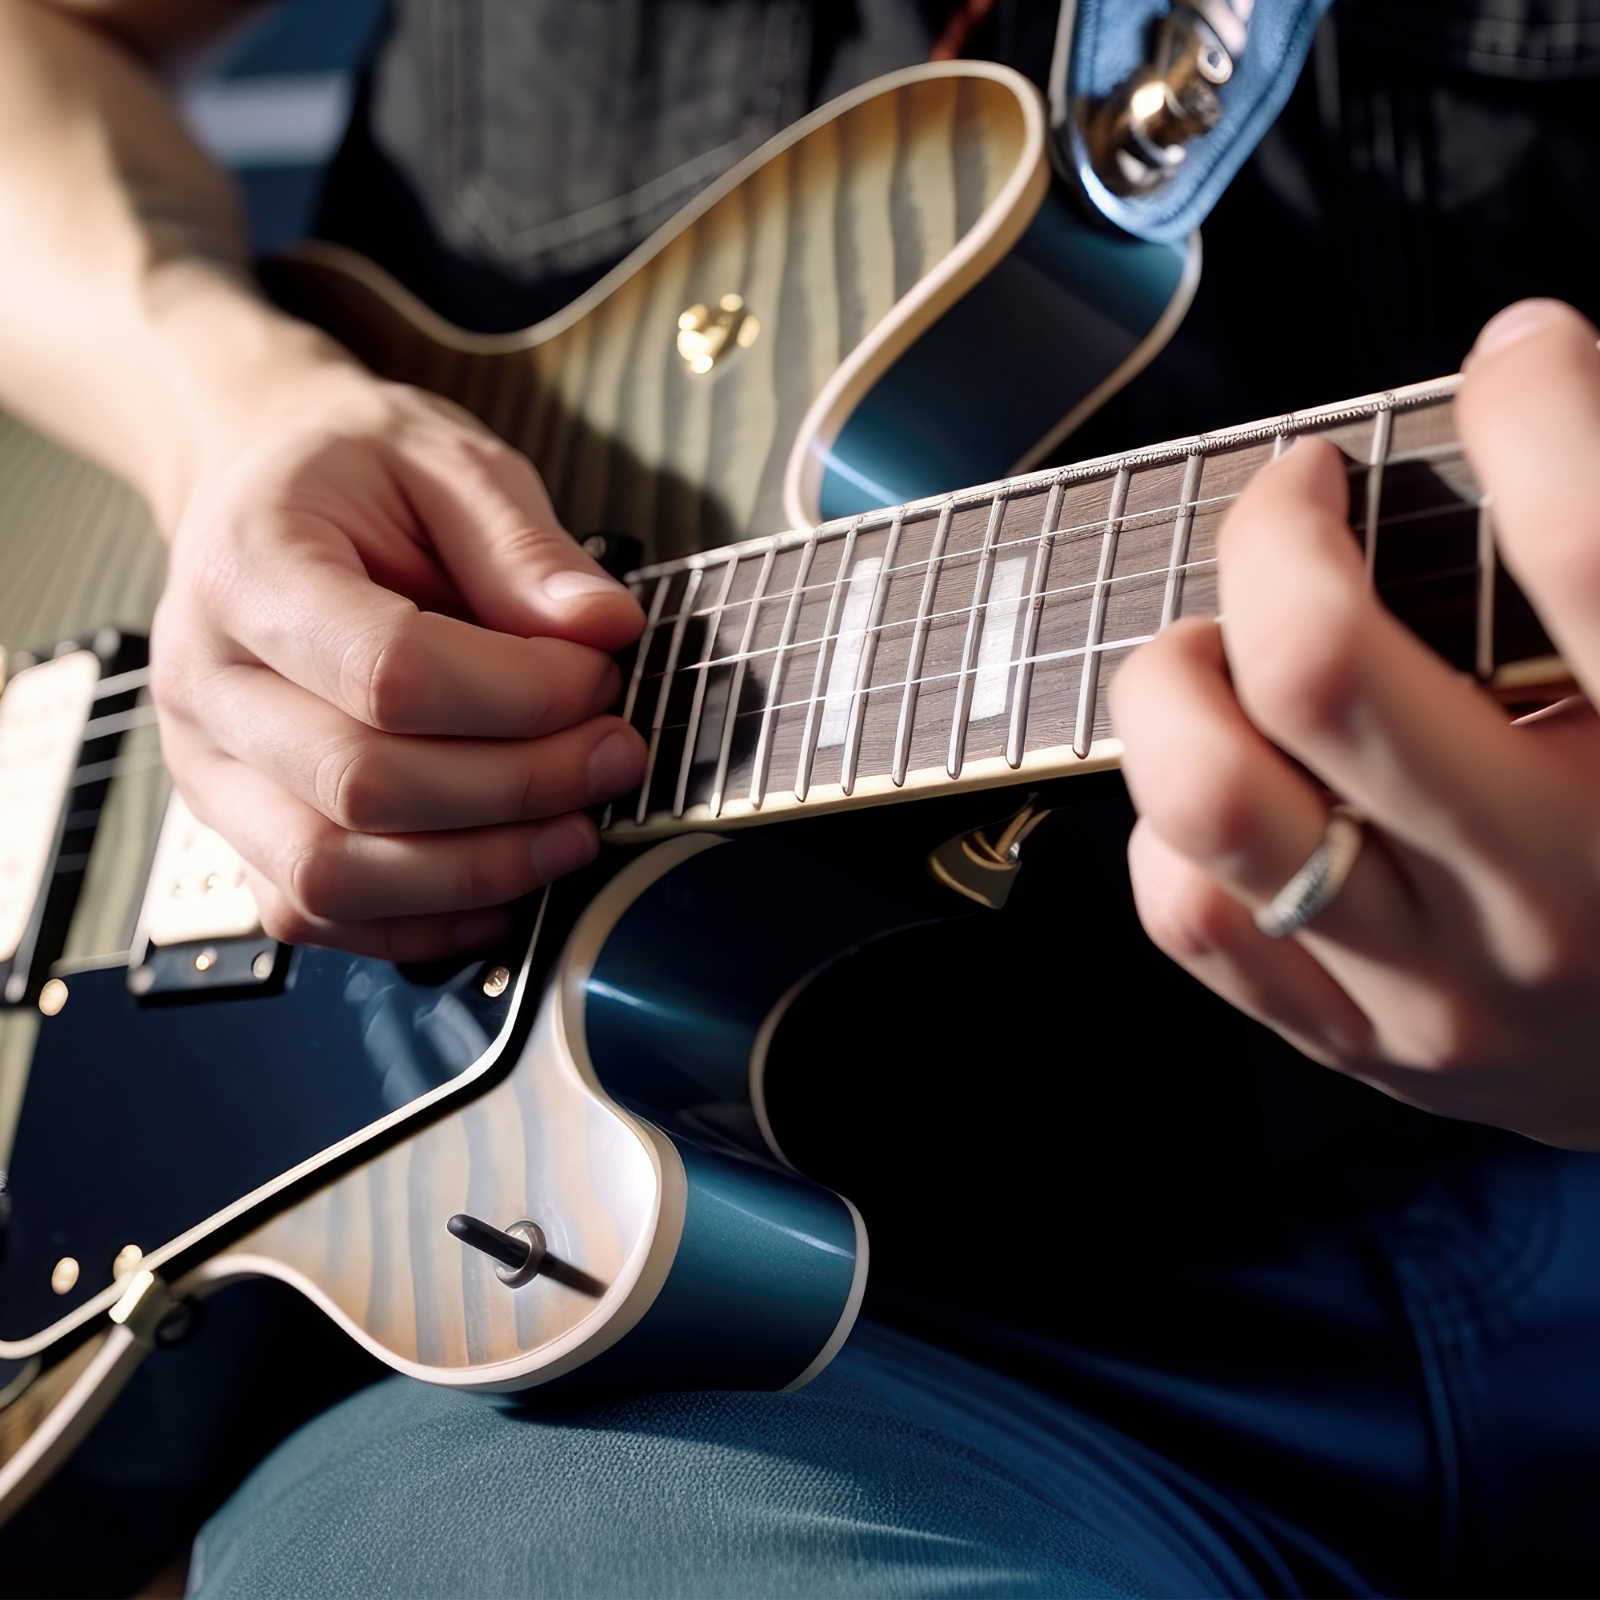 50-minütiger E-Gitarrenunterricht für Kinder : photo 1